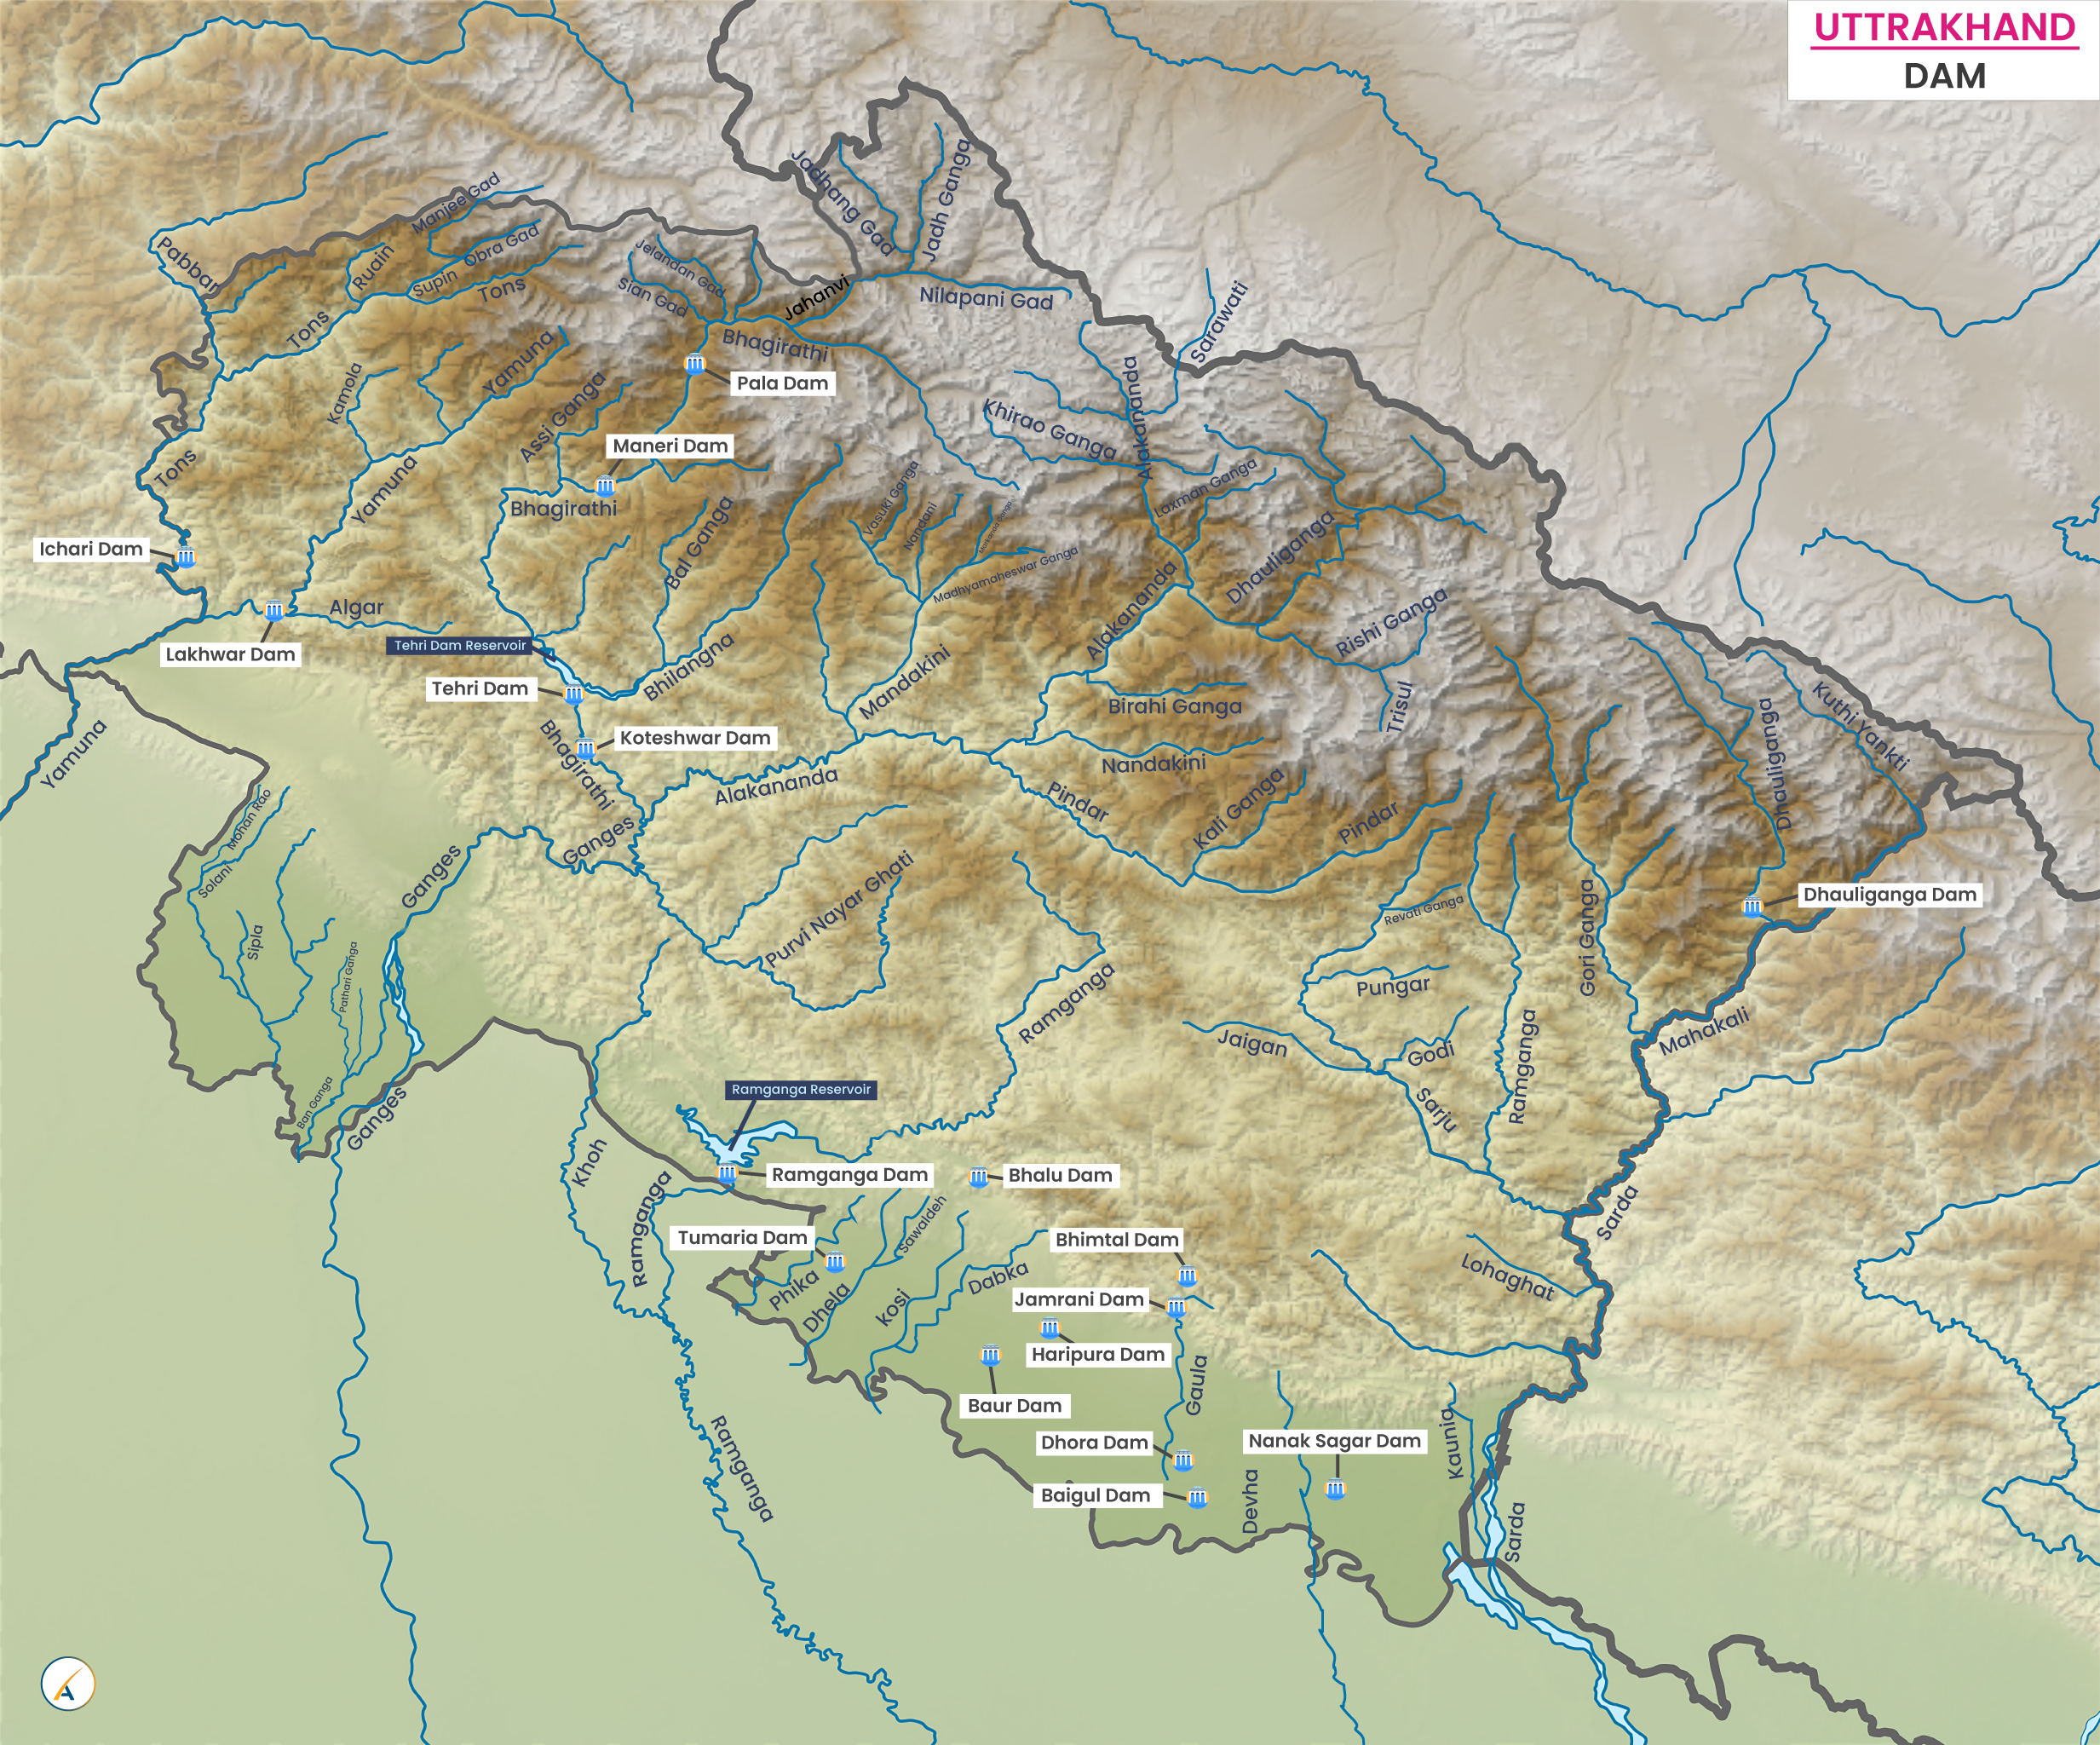 Major Dams in Uttarakhand